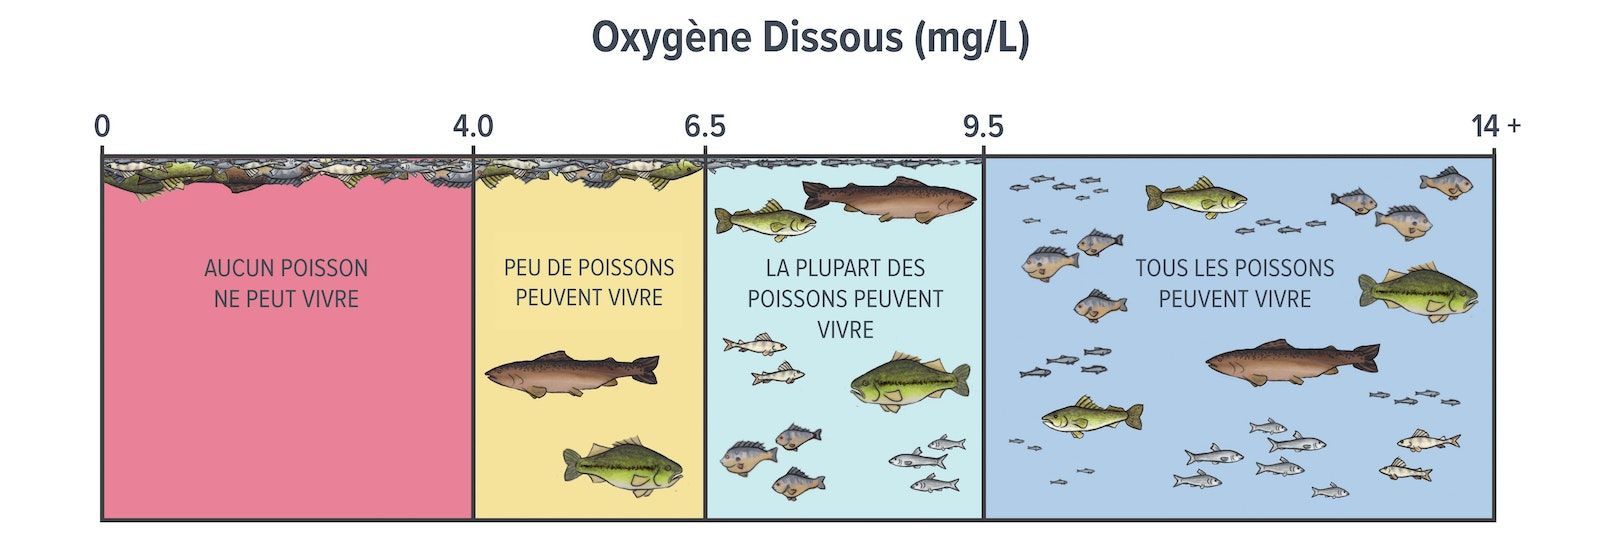 Dessin montrant l'eau avec des concentrations d'oxygène dissous de 0-4 milligrammes par litre, où aucun poisson ne peut vivre ; des poissons morts sont illustrés à la surface de l'eau. Entre 4,0 et 6,5 milligrammes par litre, peu de poissons peuvent vivre ; des poissons morts et deux poissons vivants sont illustrés. Entre 6,5 et 9,5 milligrammes par litre, la plupart des poissons peuvent vivre ; de nombreux poissons vivants et quelques poissons morts sont illustrés. De 9,5 à plus de 14 milligrammes par litre, tous les poissons peuvent vivre ; de nombreux poissons vivants sont illustrés.